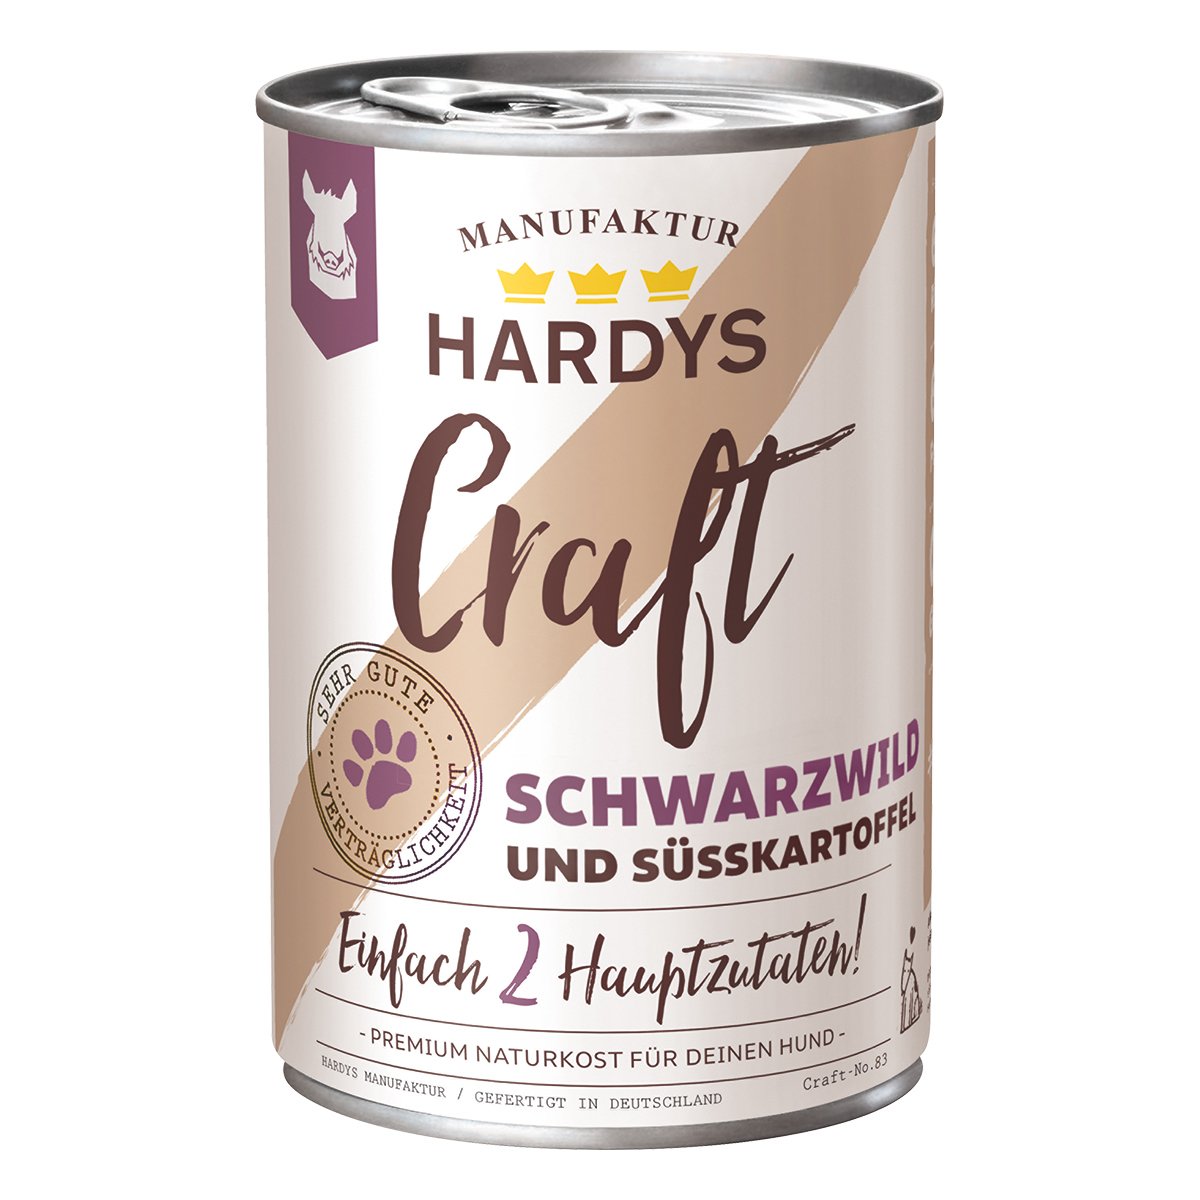 HARDYS Craft, Schwarzwild und Süsskartoffel, 1 x 400 g - glücksthaler.ch